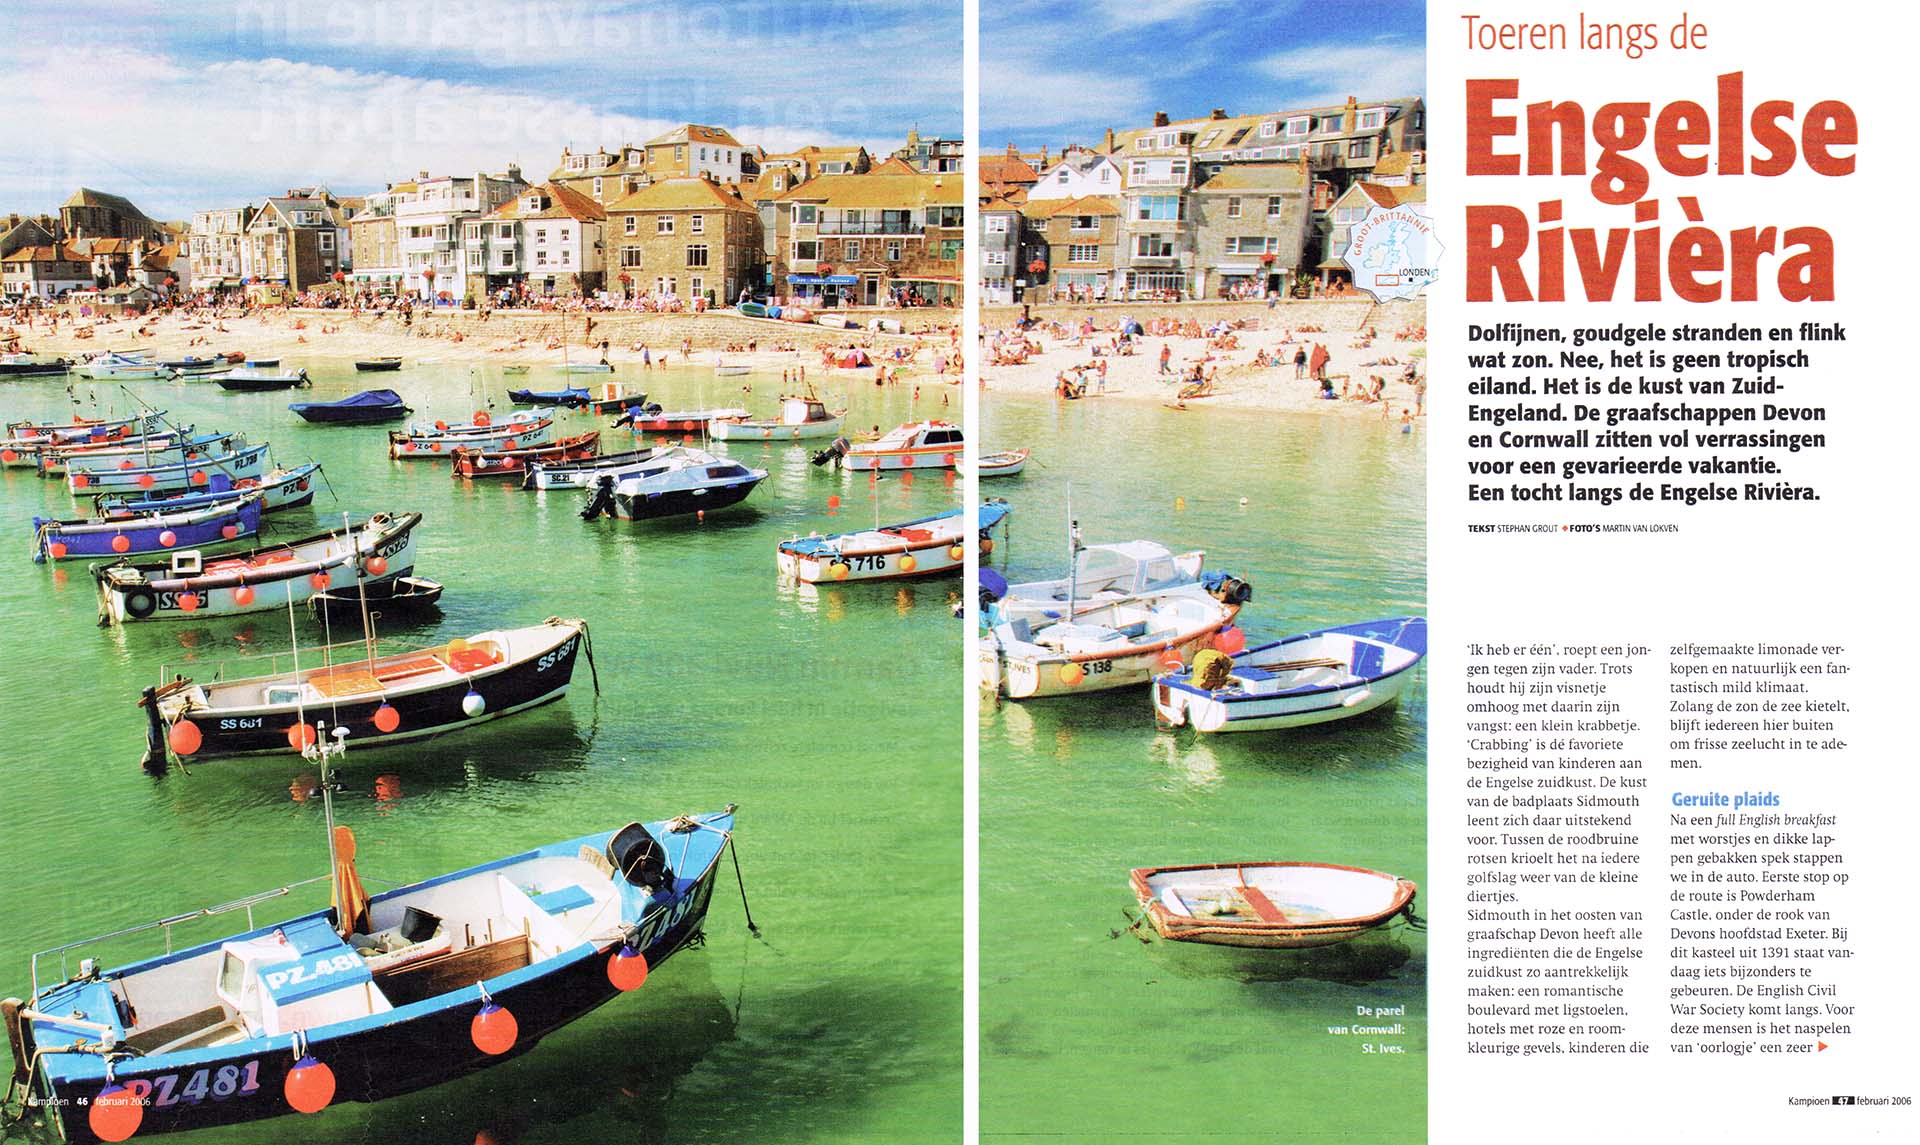 Strand met bootjes, azuurblauw water.